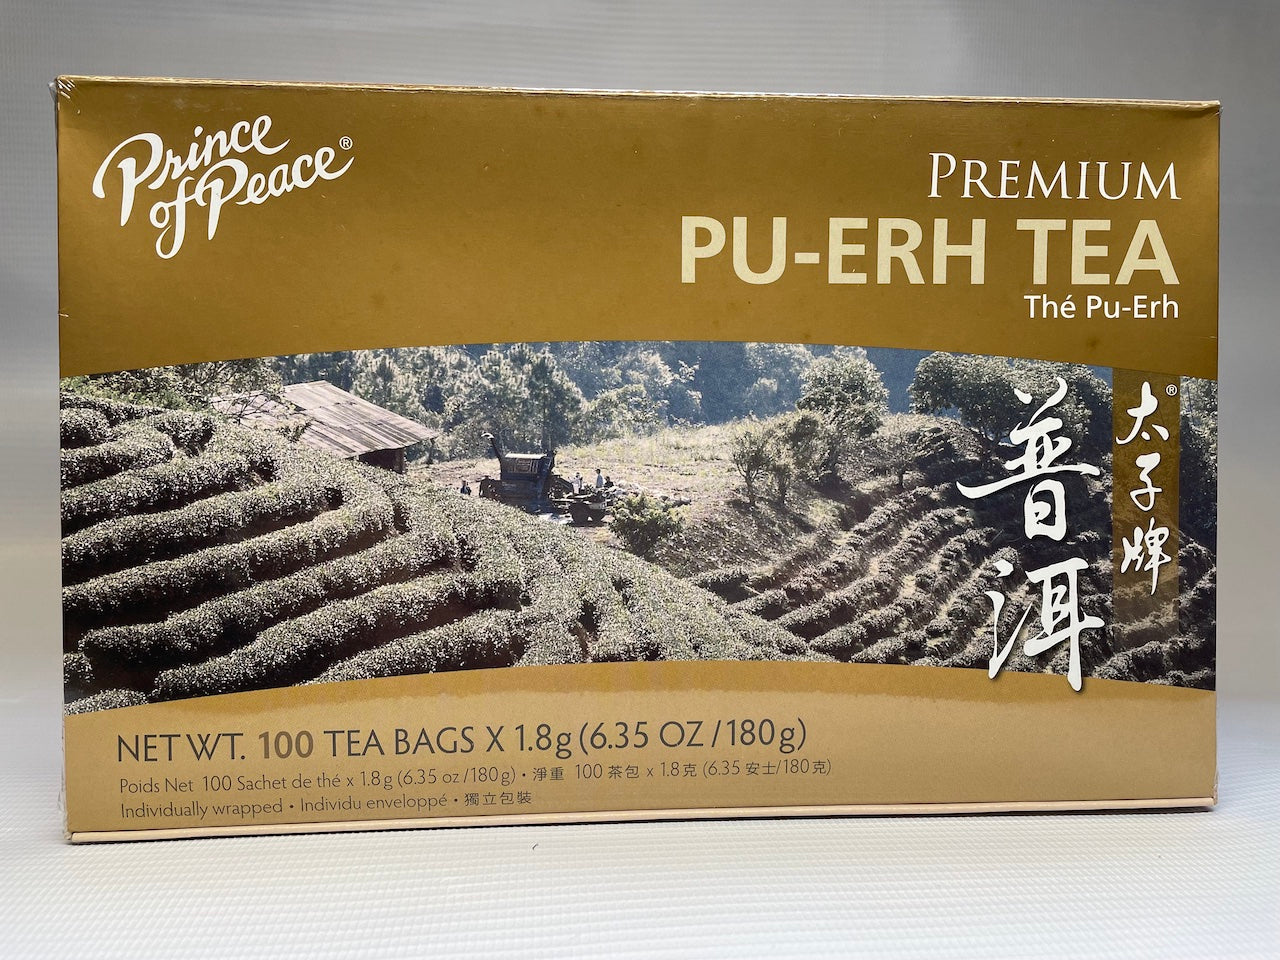 Prince of Peace Premium PU-ERH TEA 太子牌普洱茶 (100 Tea Bags)